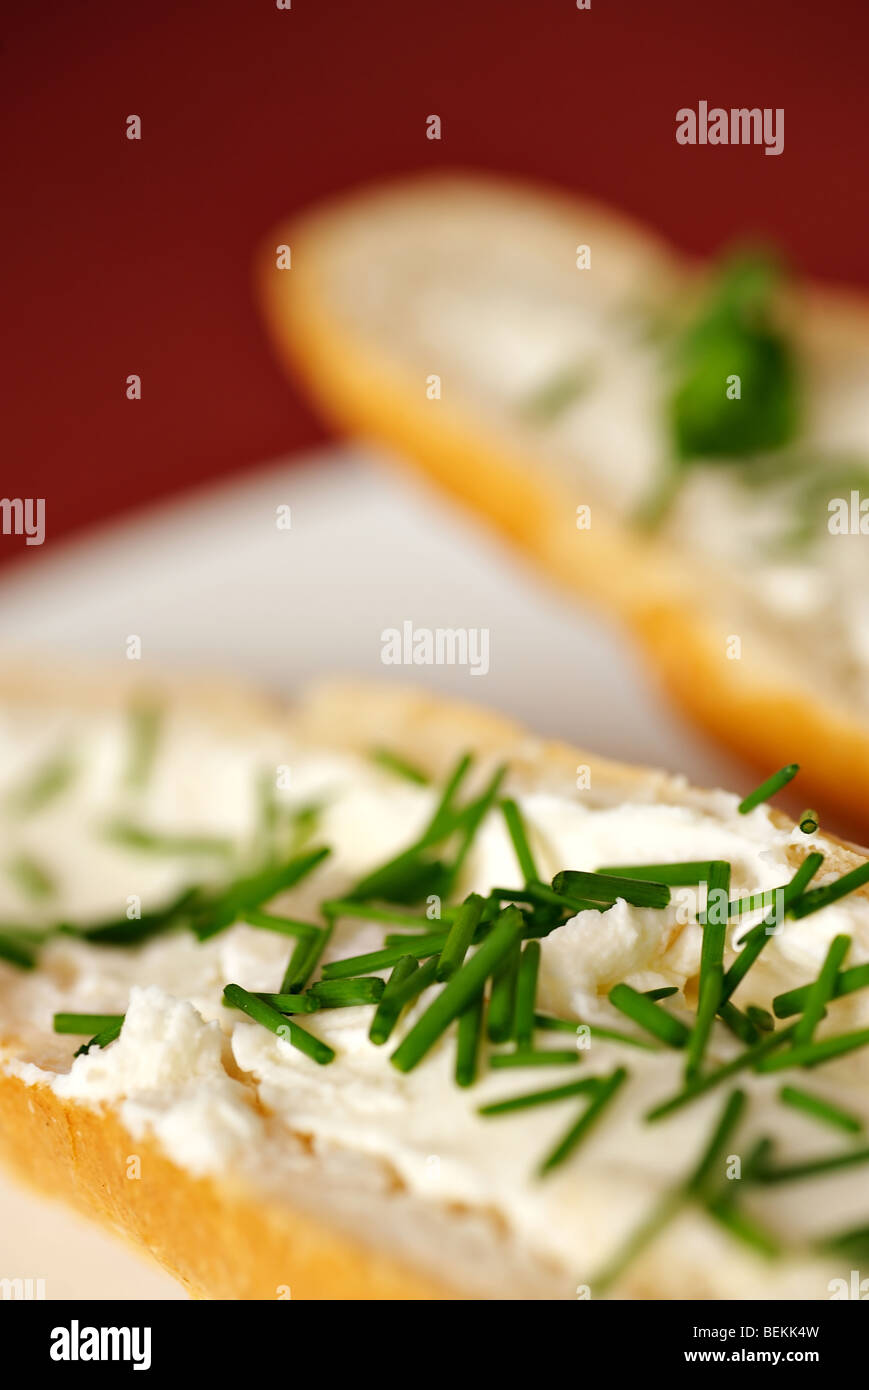 Close up dettaglio di pane con formaggio e erba cipollina, shallow DOF, rosso - sfondo viola, piastra bianca, composizione verticale Foto Stock